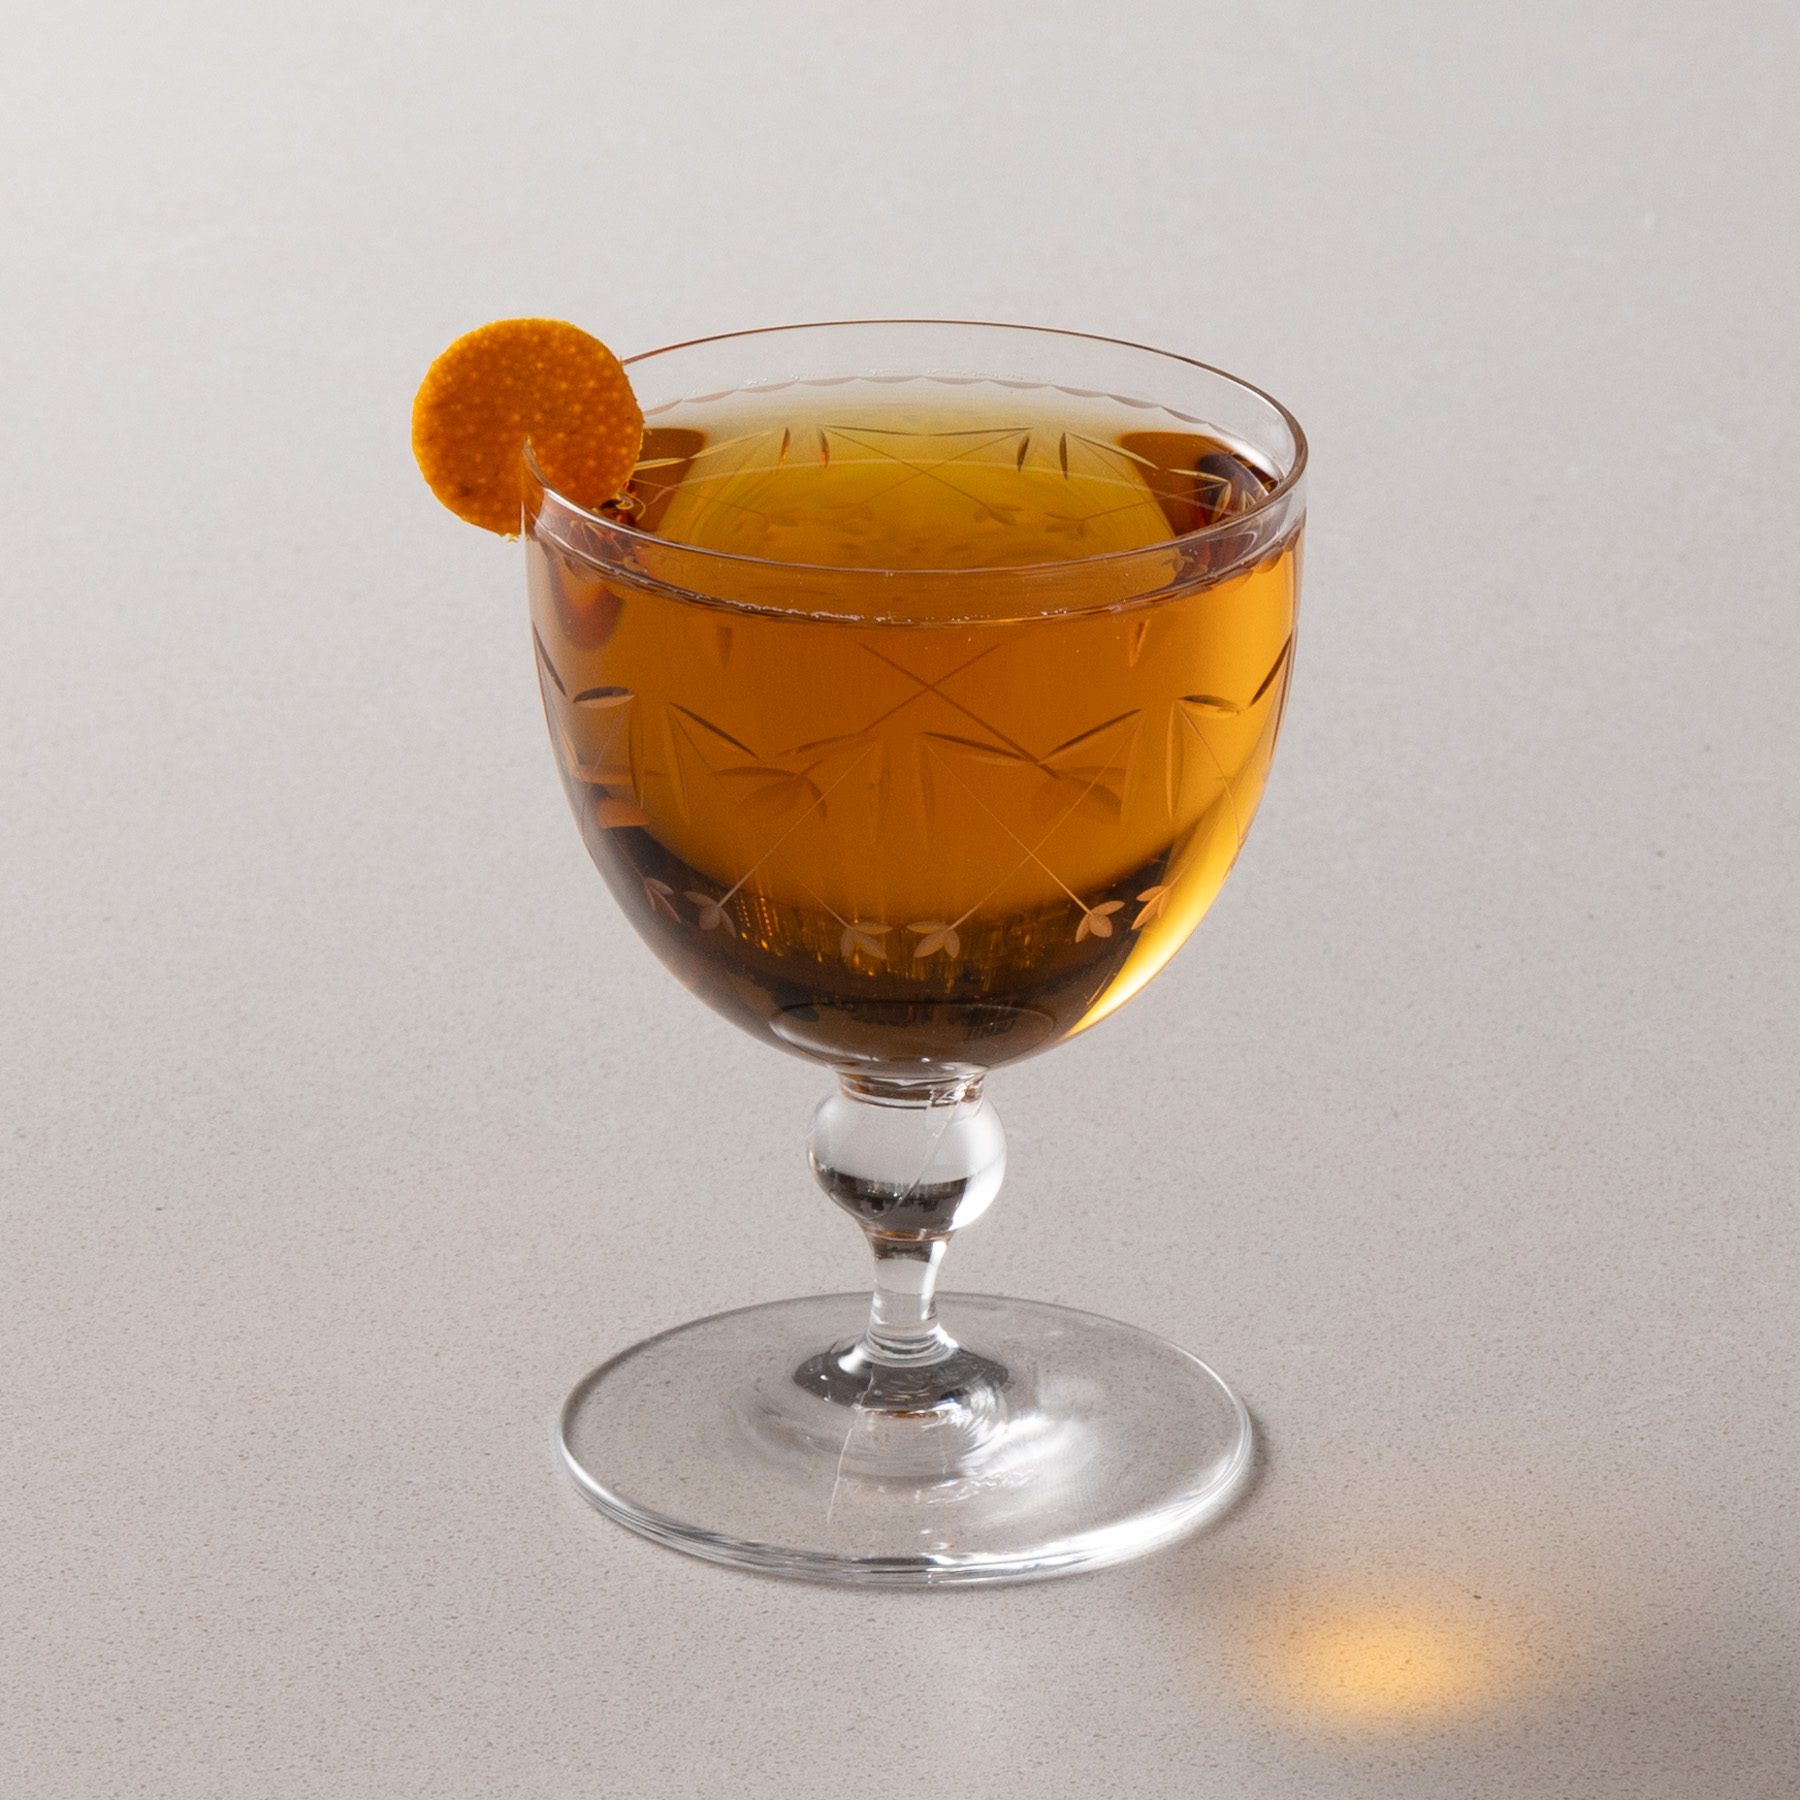 Martinez cocktail